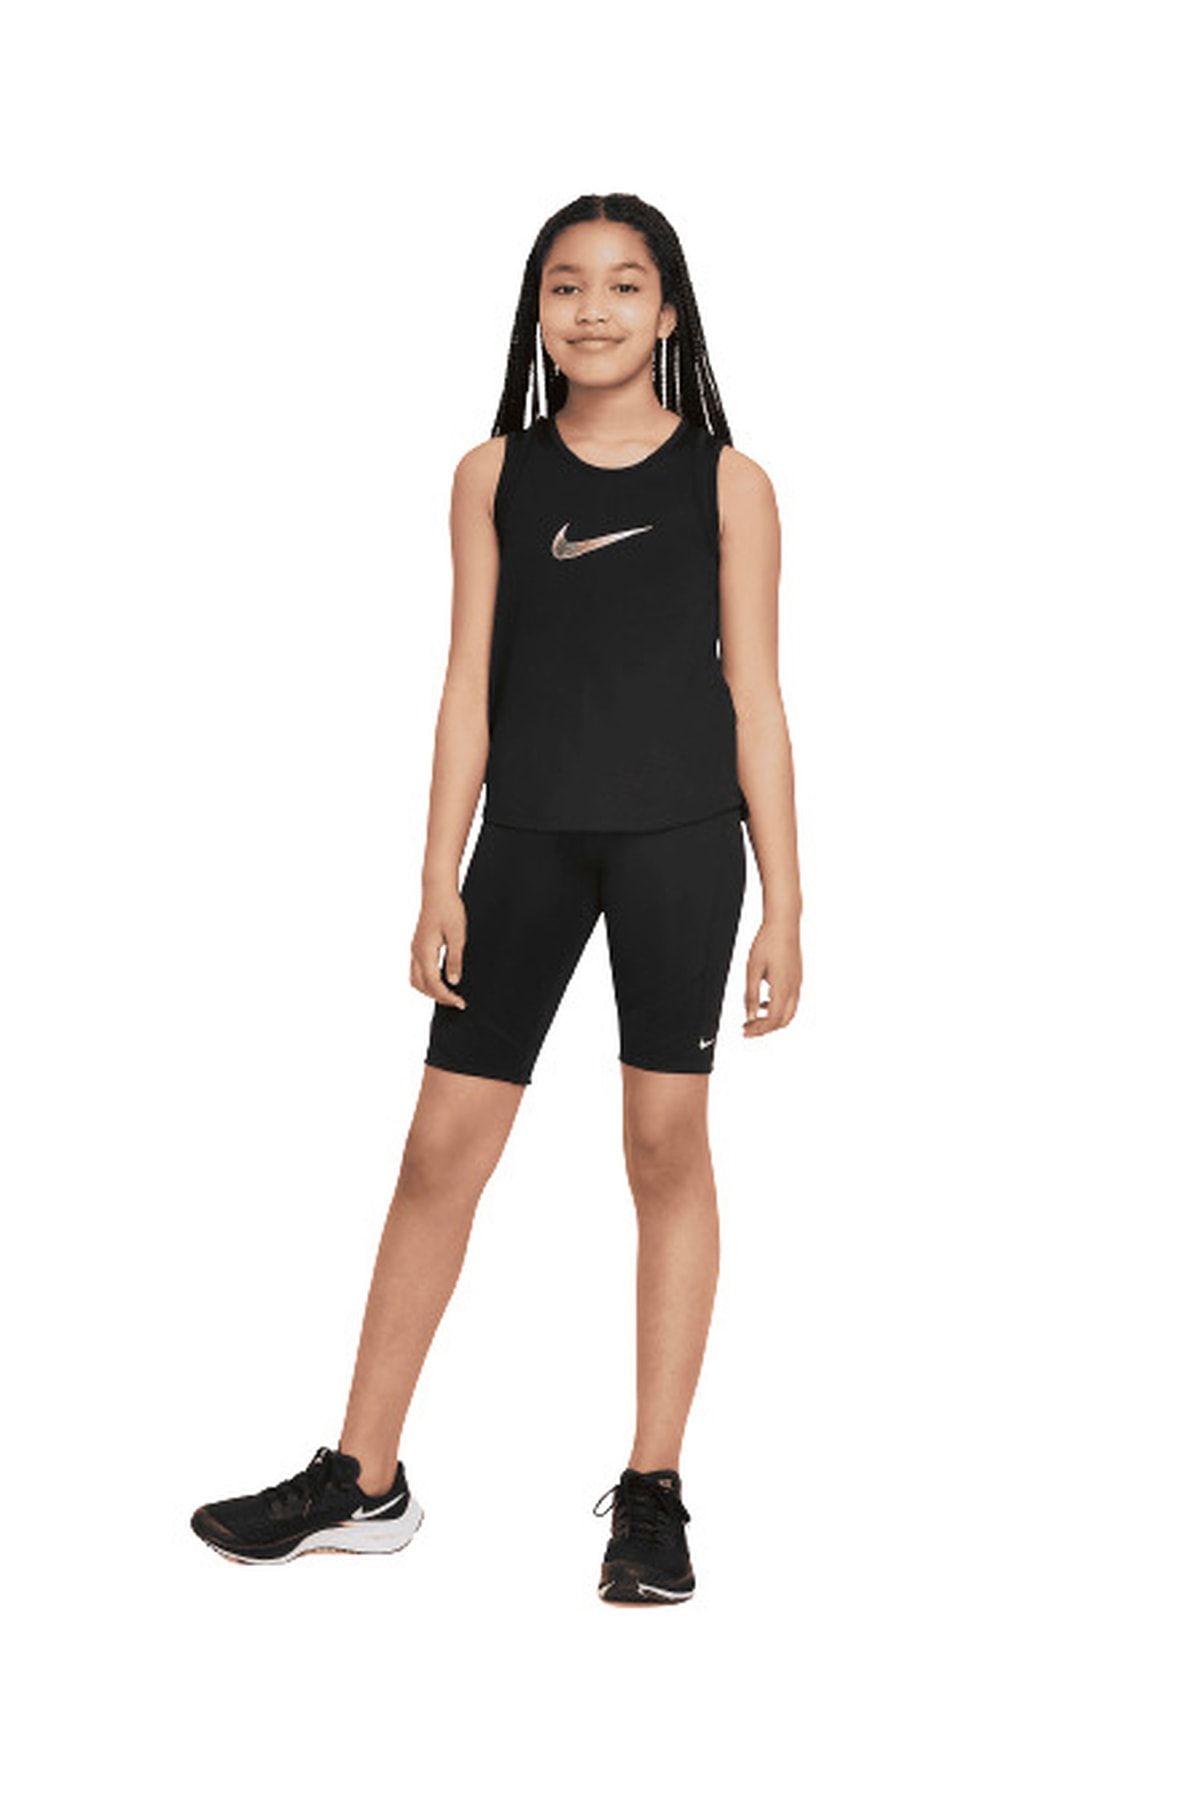 Nike Dri-fit One Bike (girls') Çocuk Spor Şort Dd8016-010